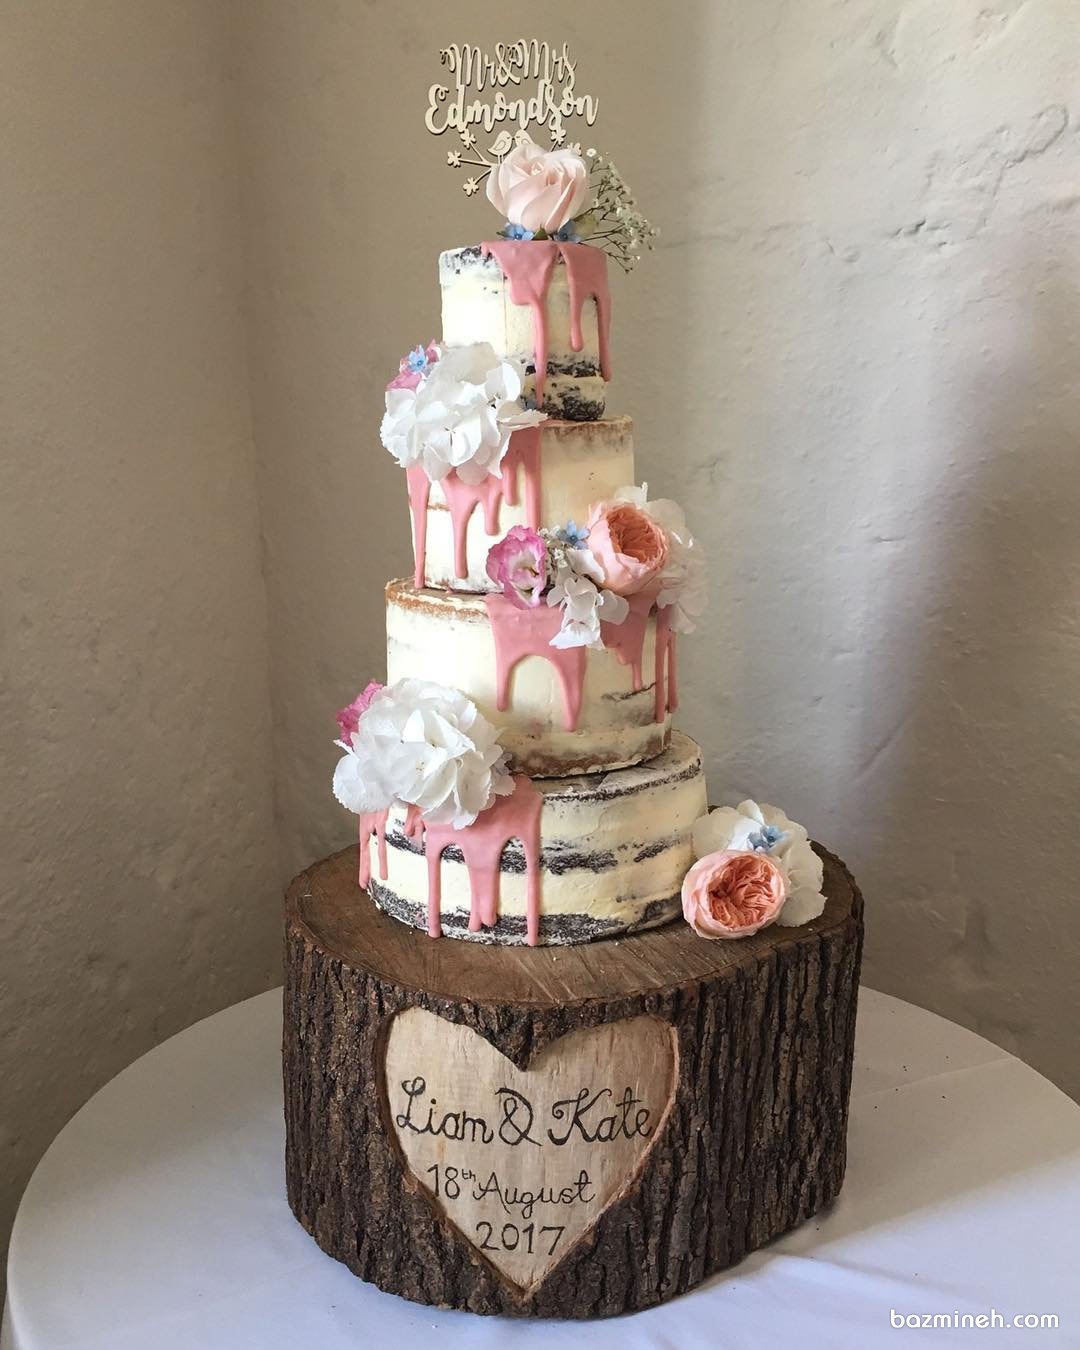 کیک فانتزی چند طبقه شکلاتی  جشن نامزدی یا سالگرد ازدواج با تزیین گل های طبیعی